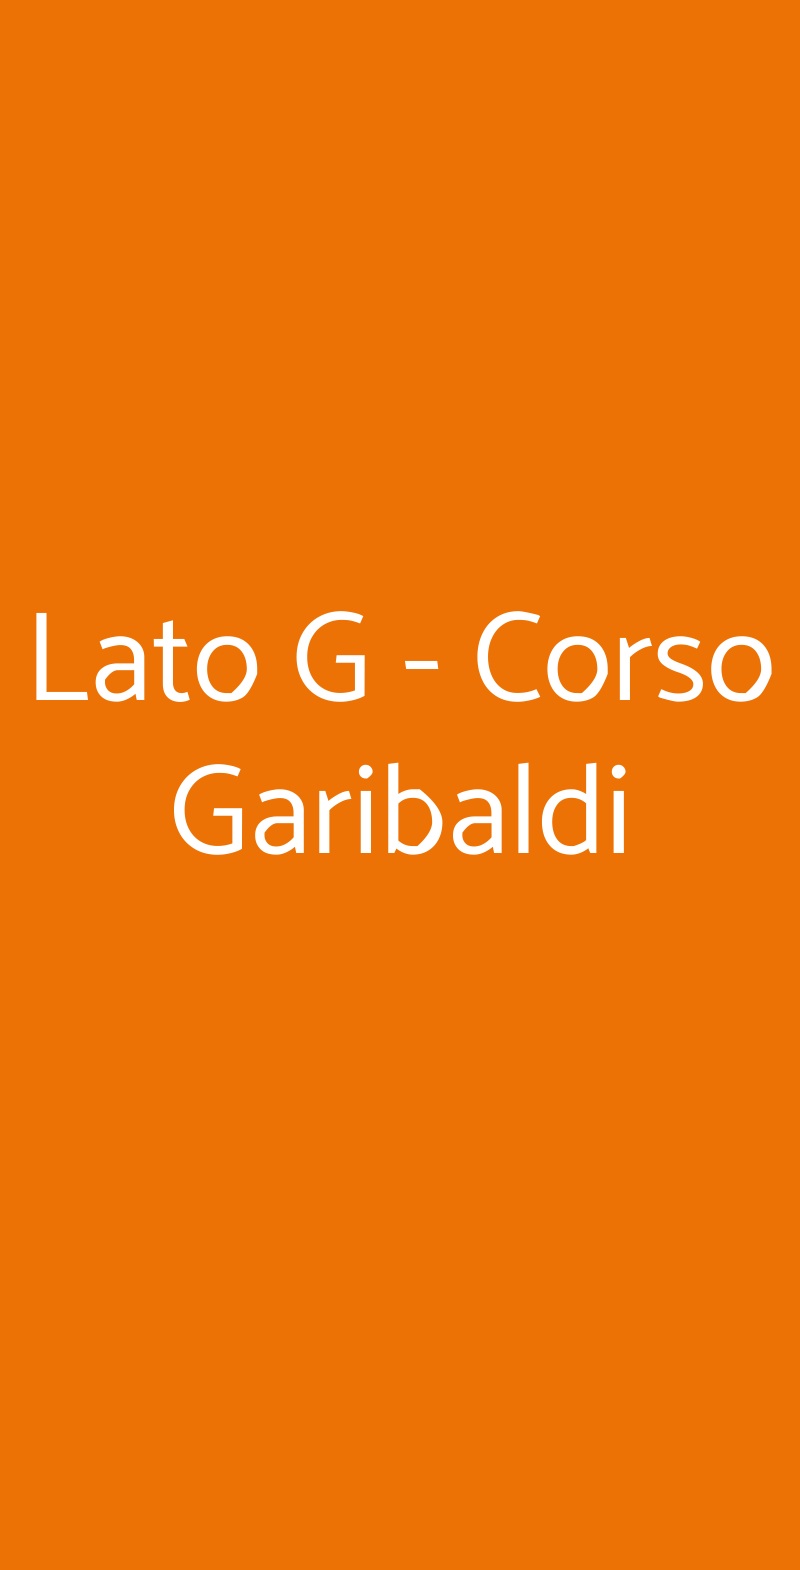 Lato G - Corso Garibaldi Milano menù 1 pagina